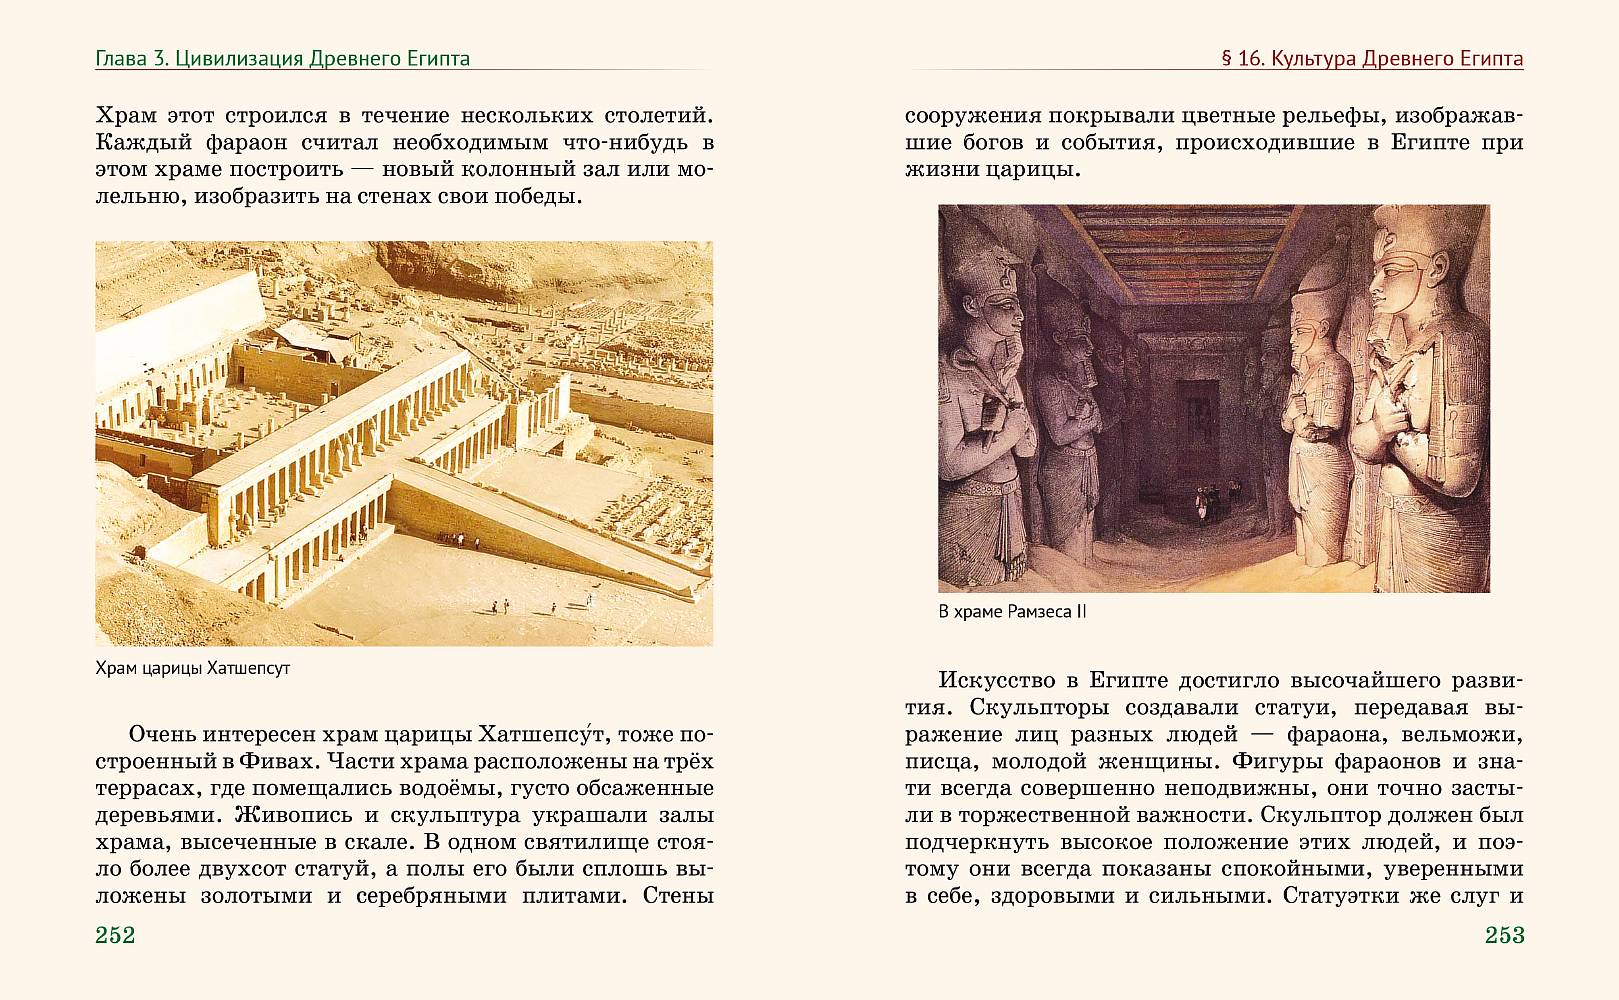 святилища и обряды языческого богослужения древних славян